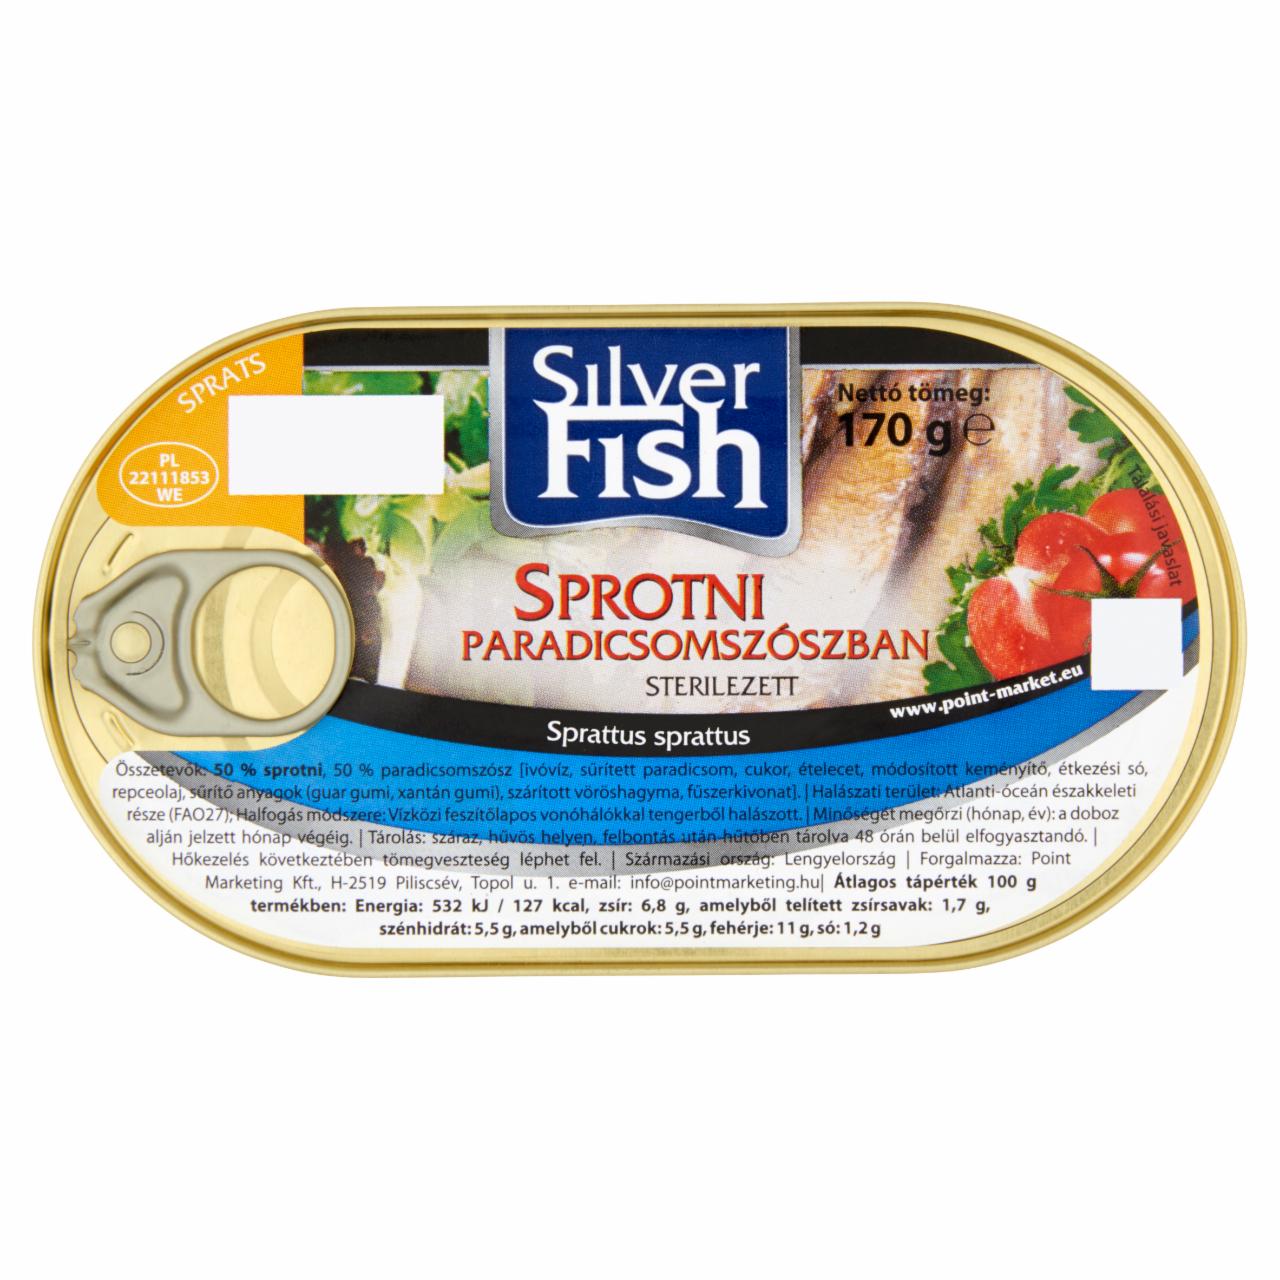 Képek - Silverfish sprotni paradicsomszószban 170 g